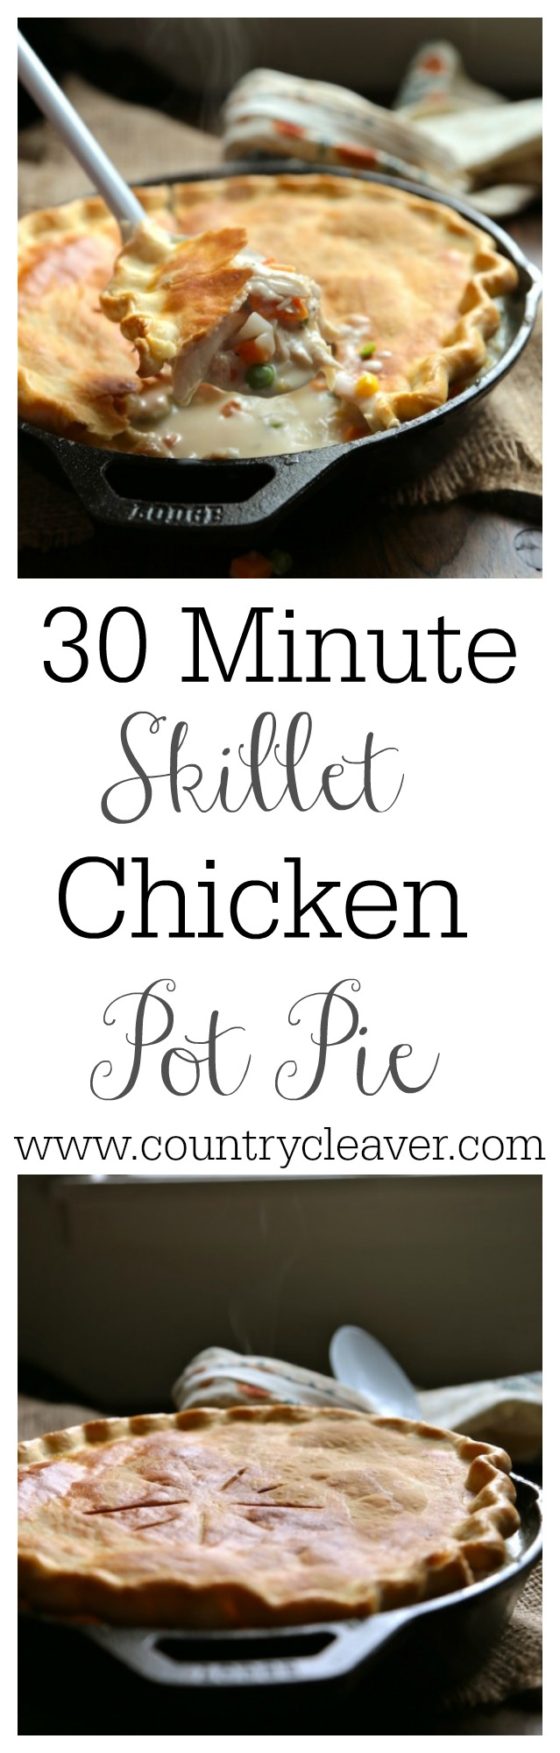 30 Minute Skillet Chicken Pot Pie